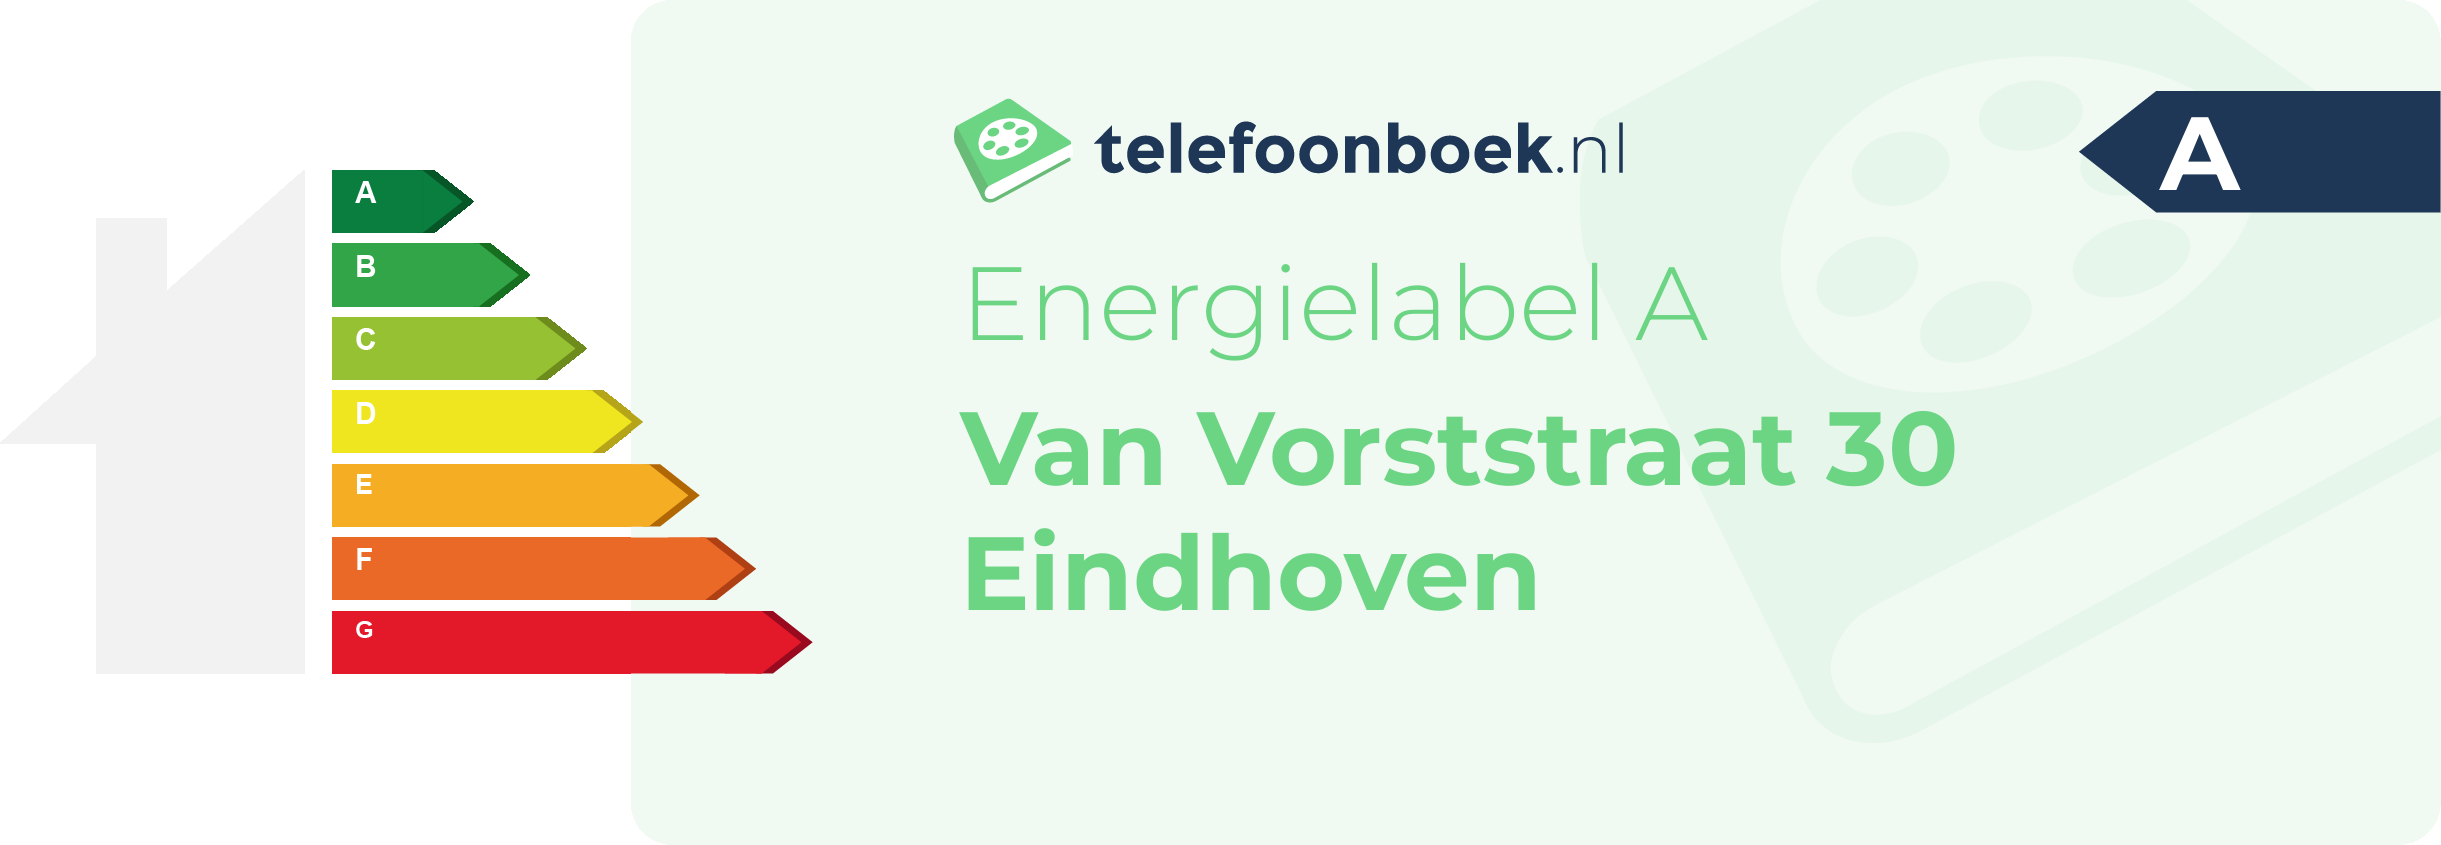 Energielabel Van Vorststraat 30 Eindhoven